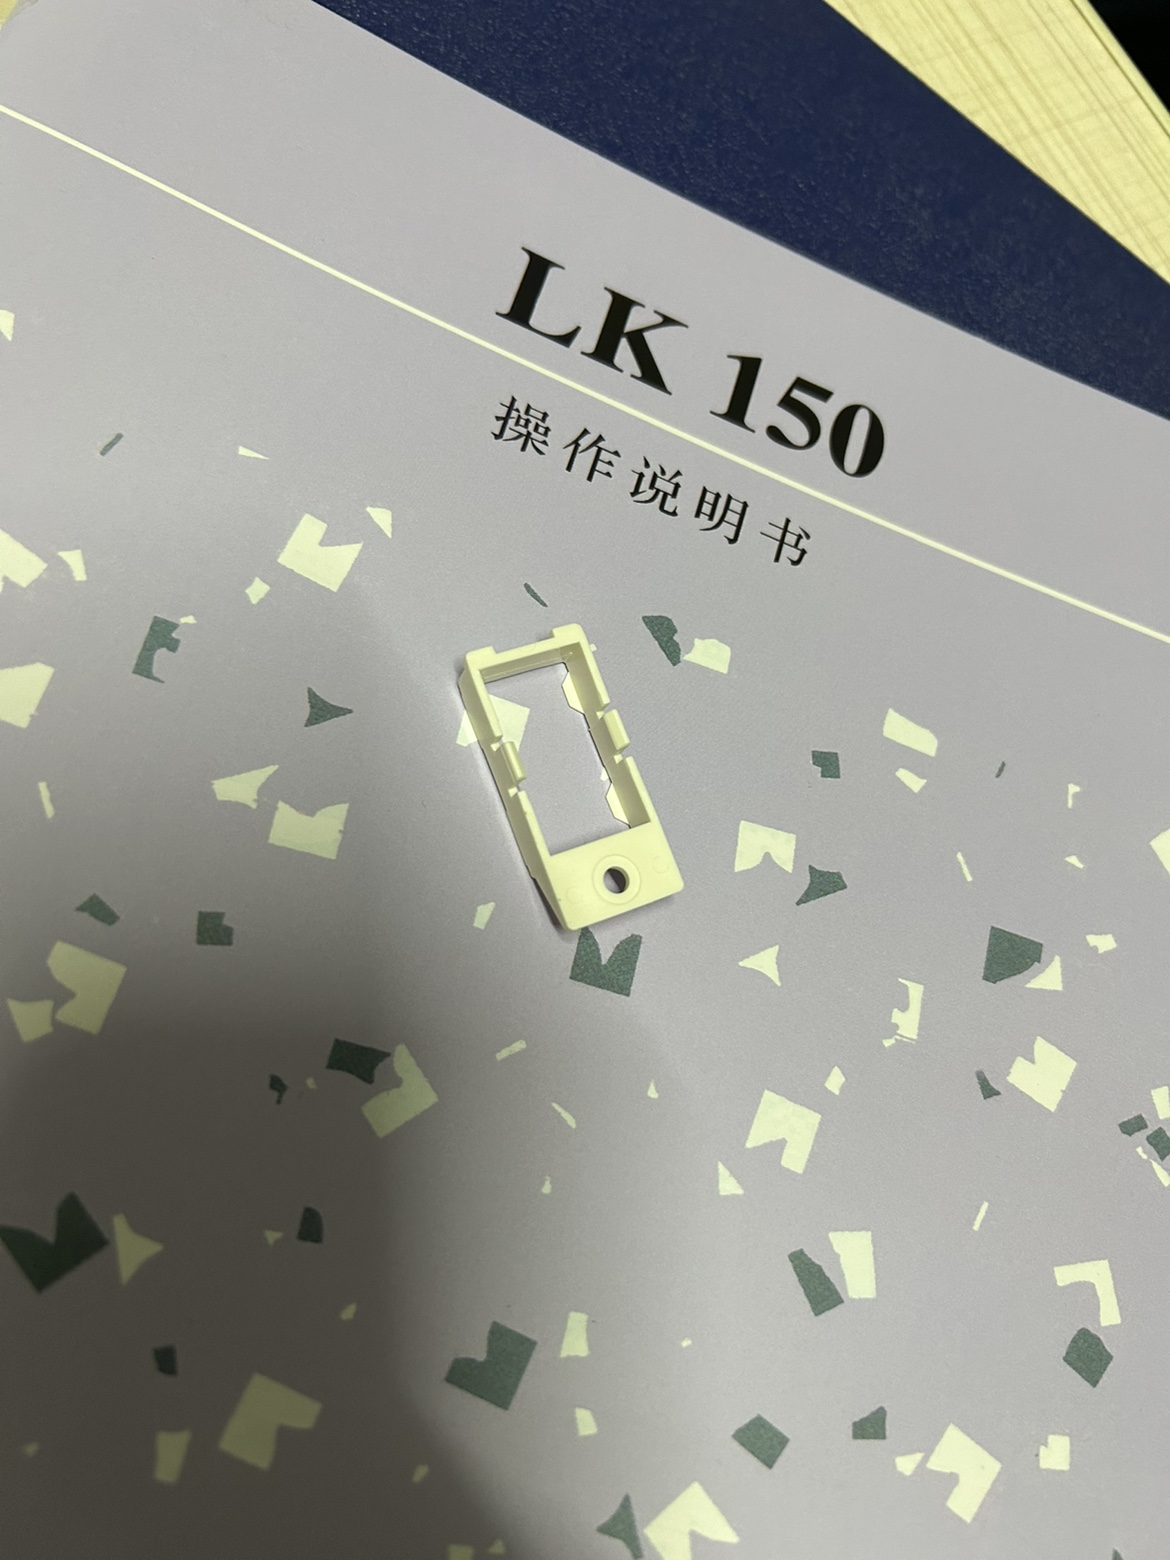 LK150编织机机头磁铁盖 - 图1